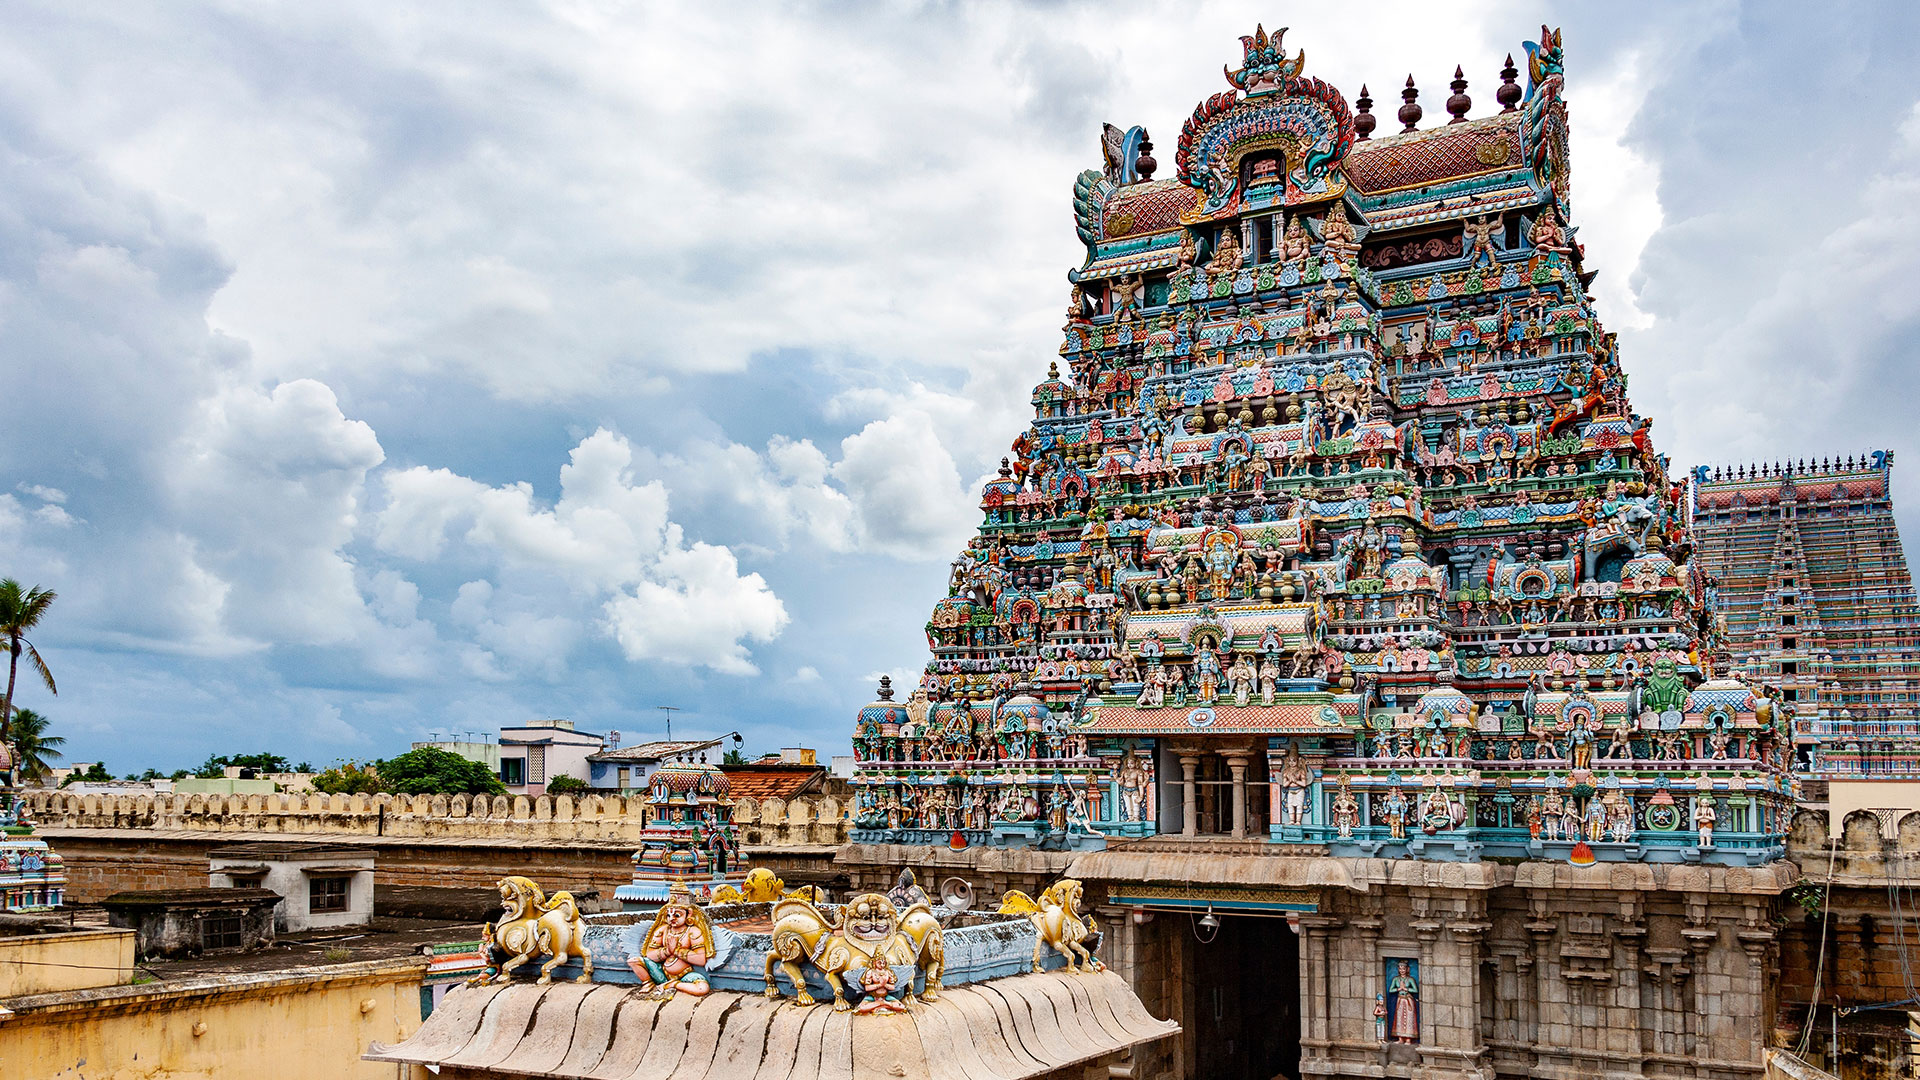 chennai pondicherry mahabalipuram tour with price